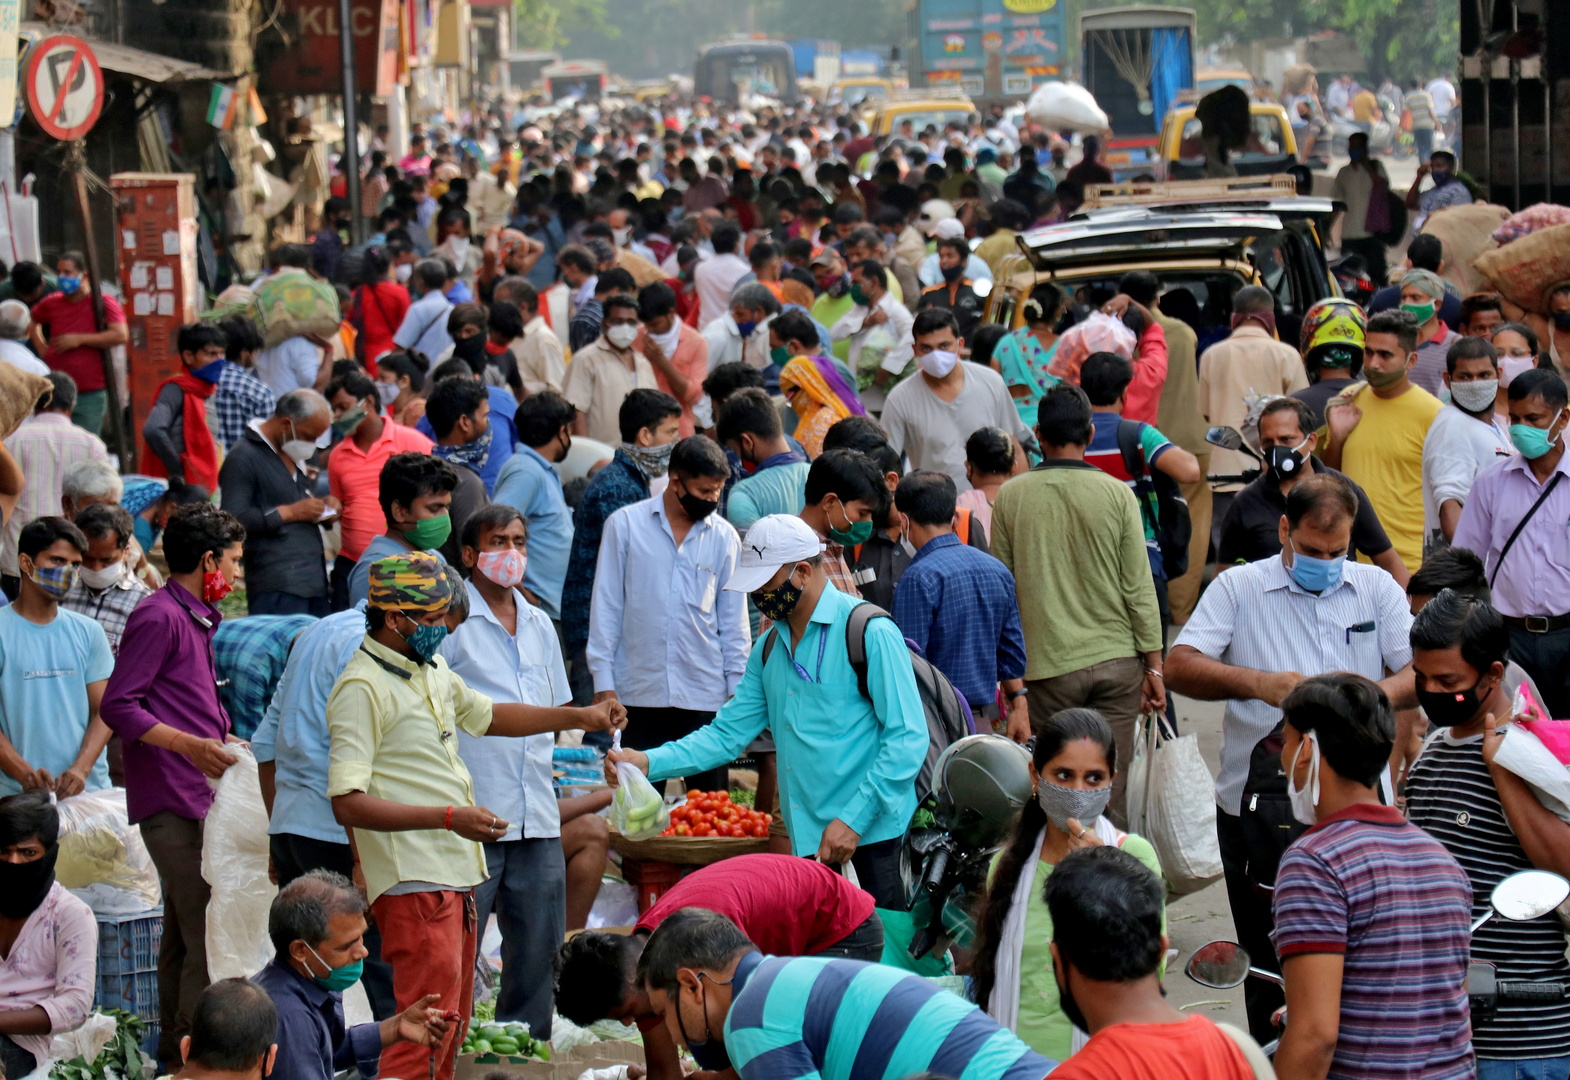 وفاة 25 مصابا بكورونا في مستشفى هندي بسبب نقص الأكسجين